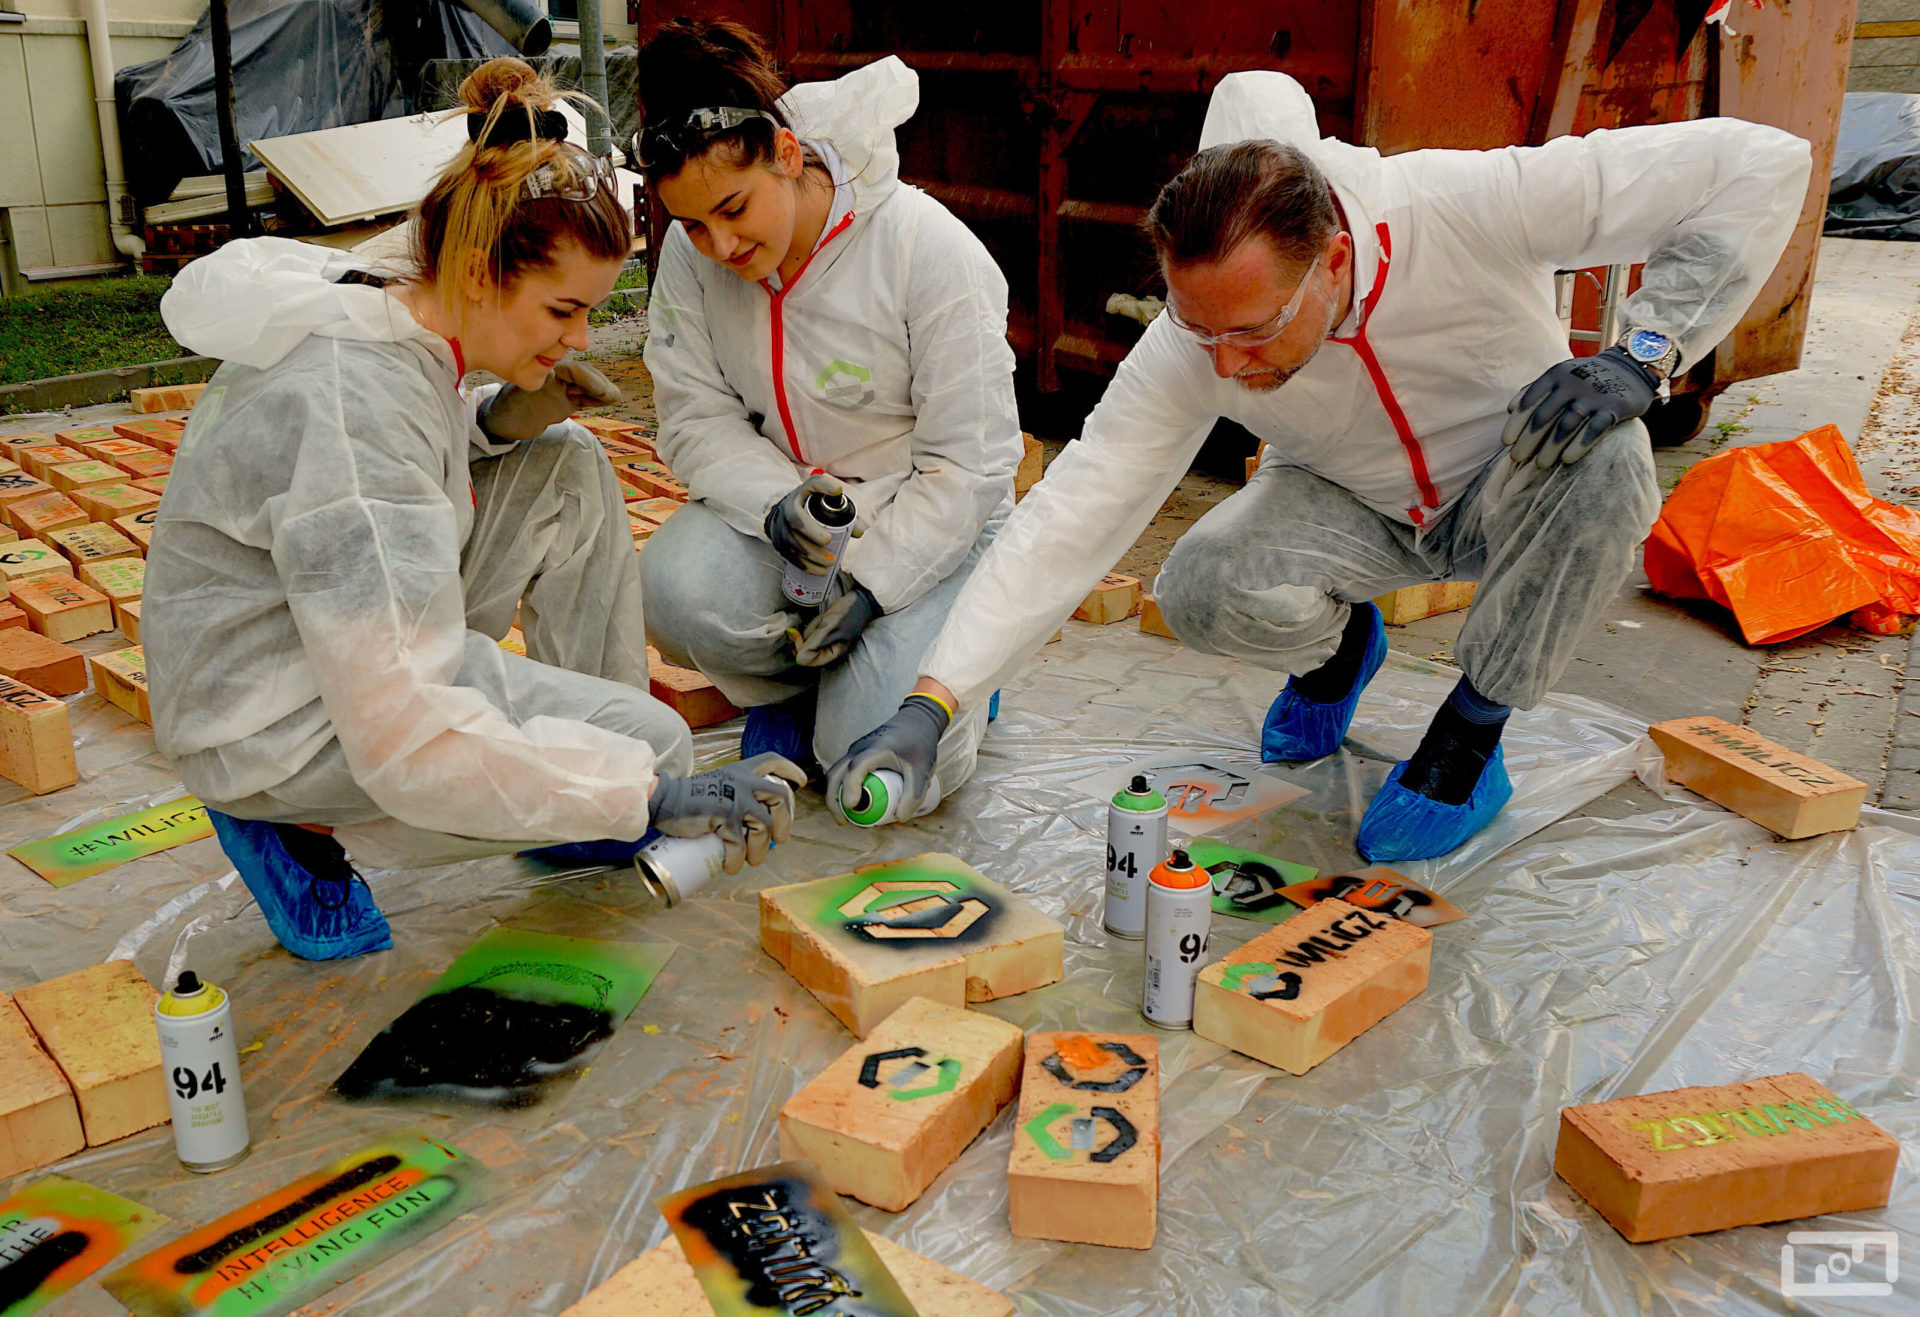 Dziekan Wydziału WILiGZ prof. Marek Cała wraz z dwoma studentkami ubrani w folie malarskie malują cegły przy użyciu sprayów i szablonów. Za nimi na foli leżą pomalowane cegły.